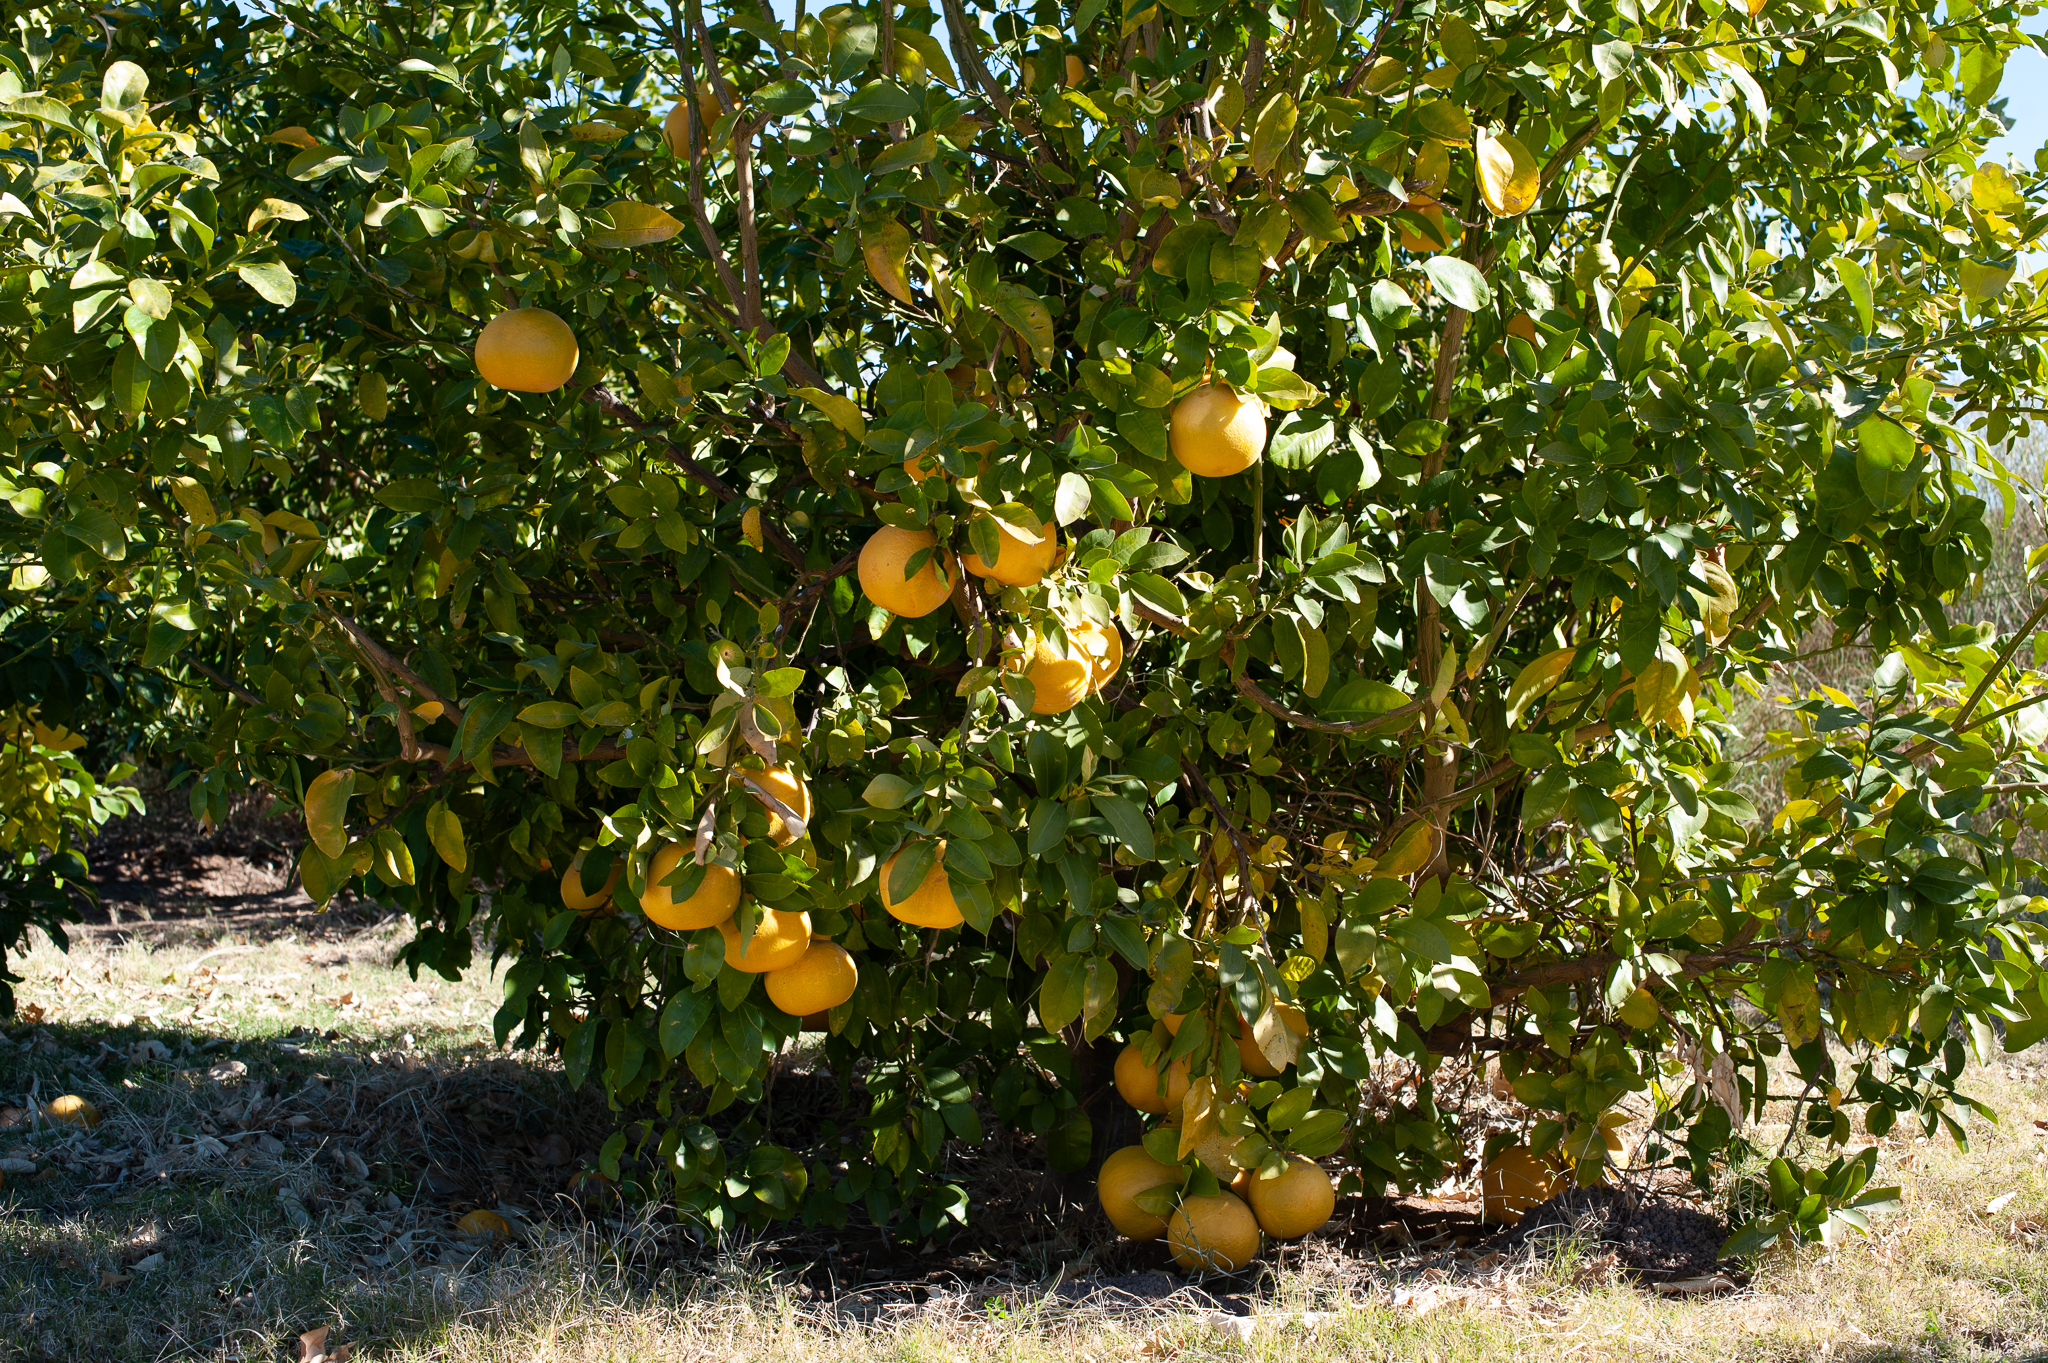 Lemons in the Learning Garden